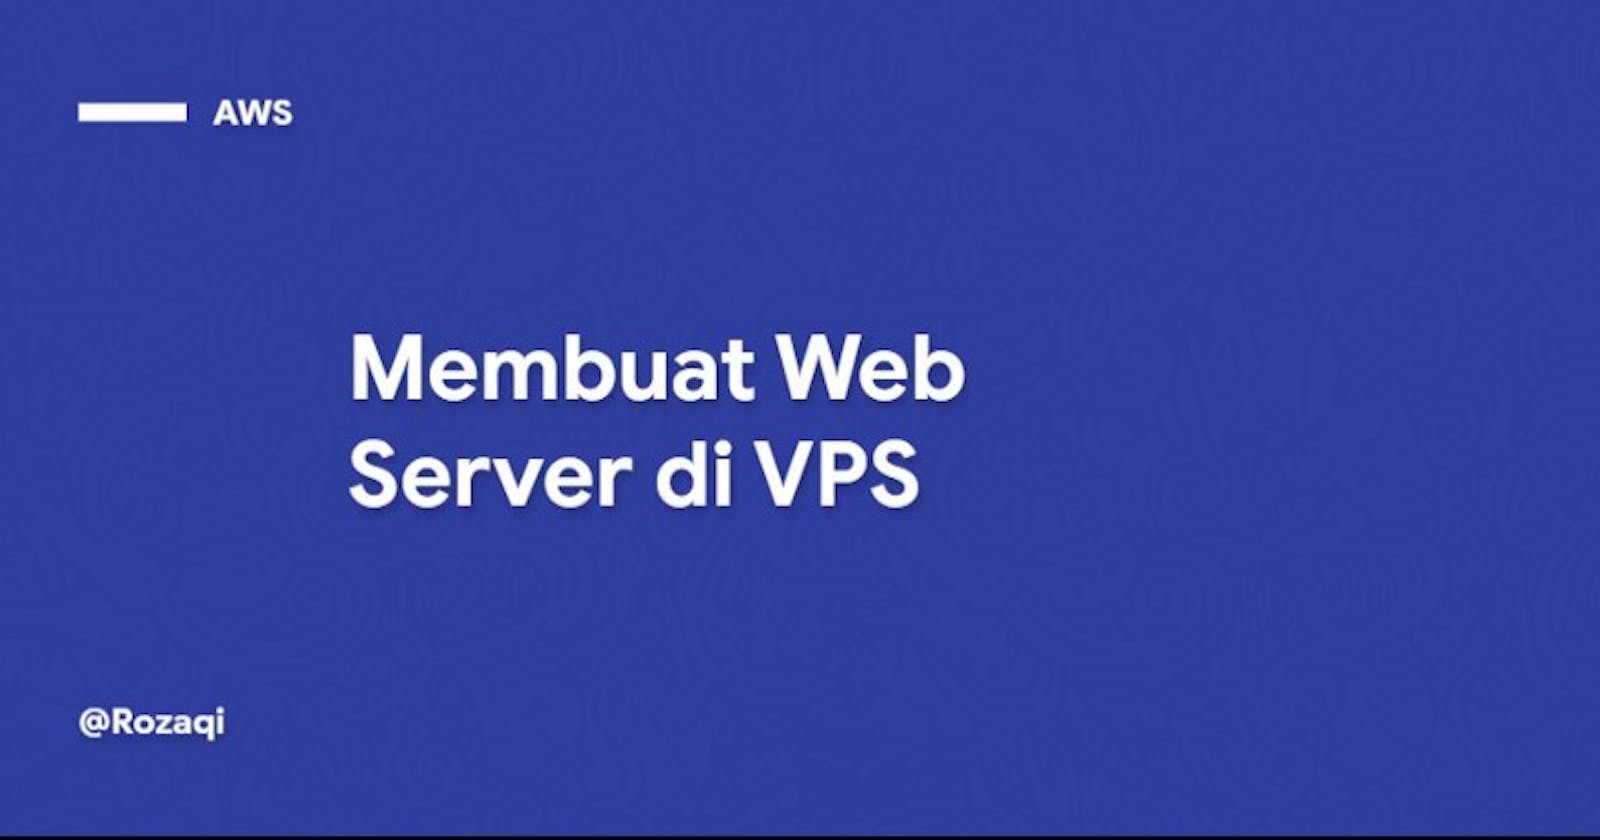 Membuat Web Server di VPS [AWS] #3